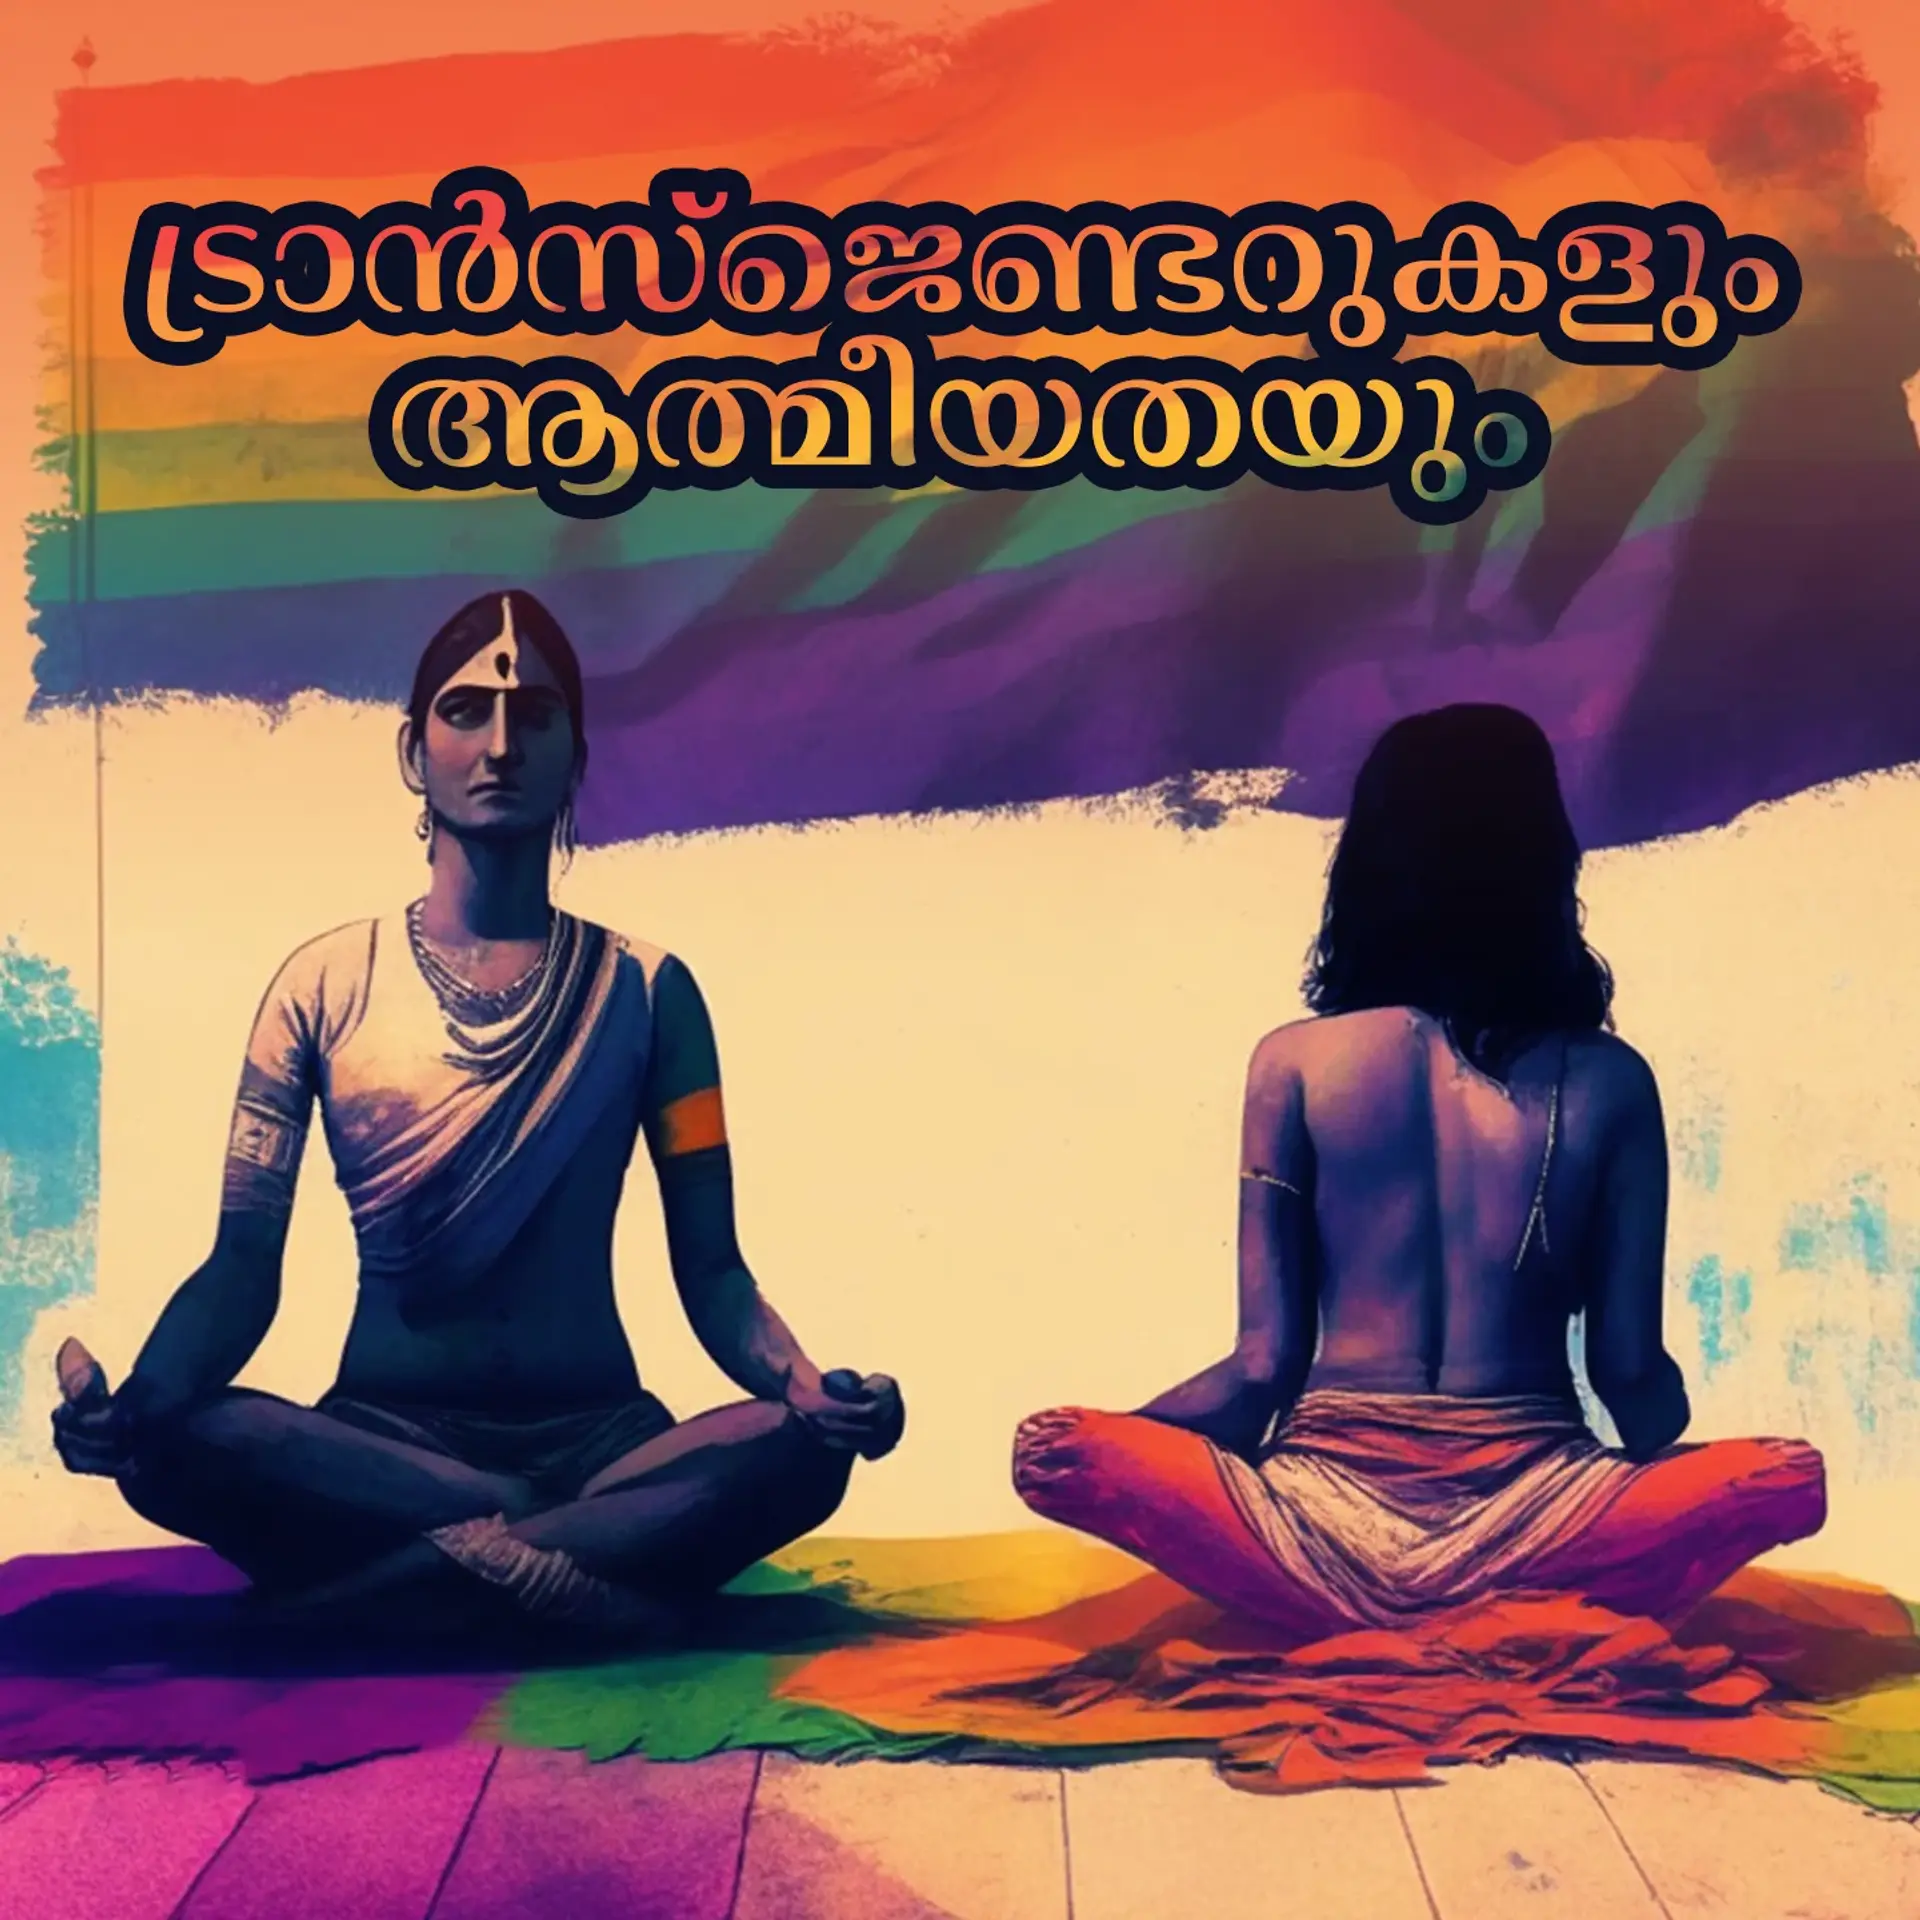 Transgenderukalude Vyakthithwam